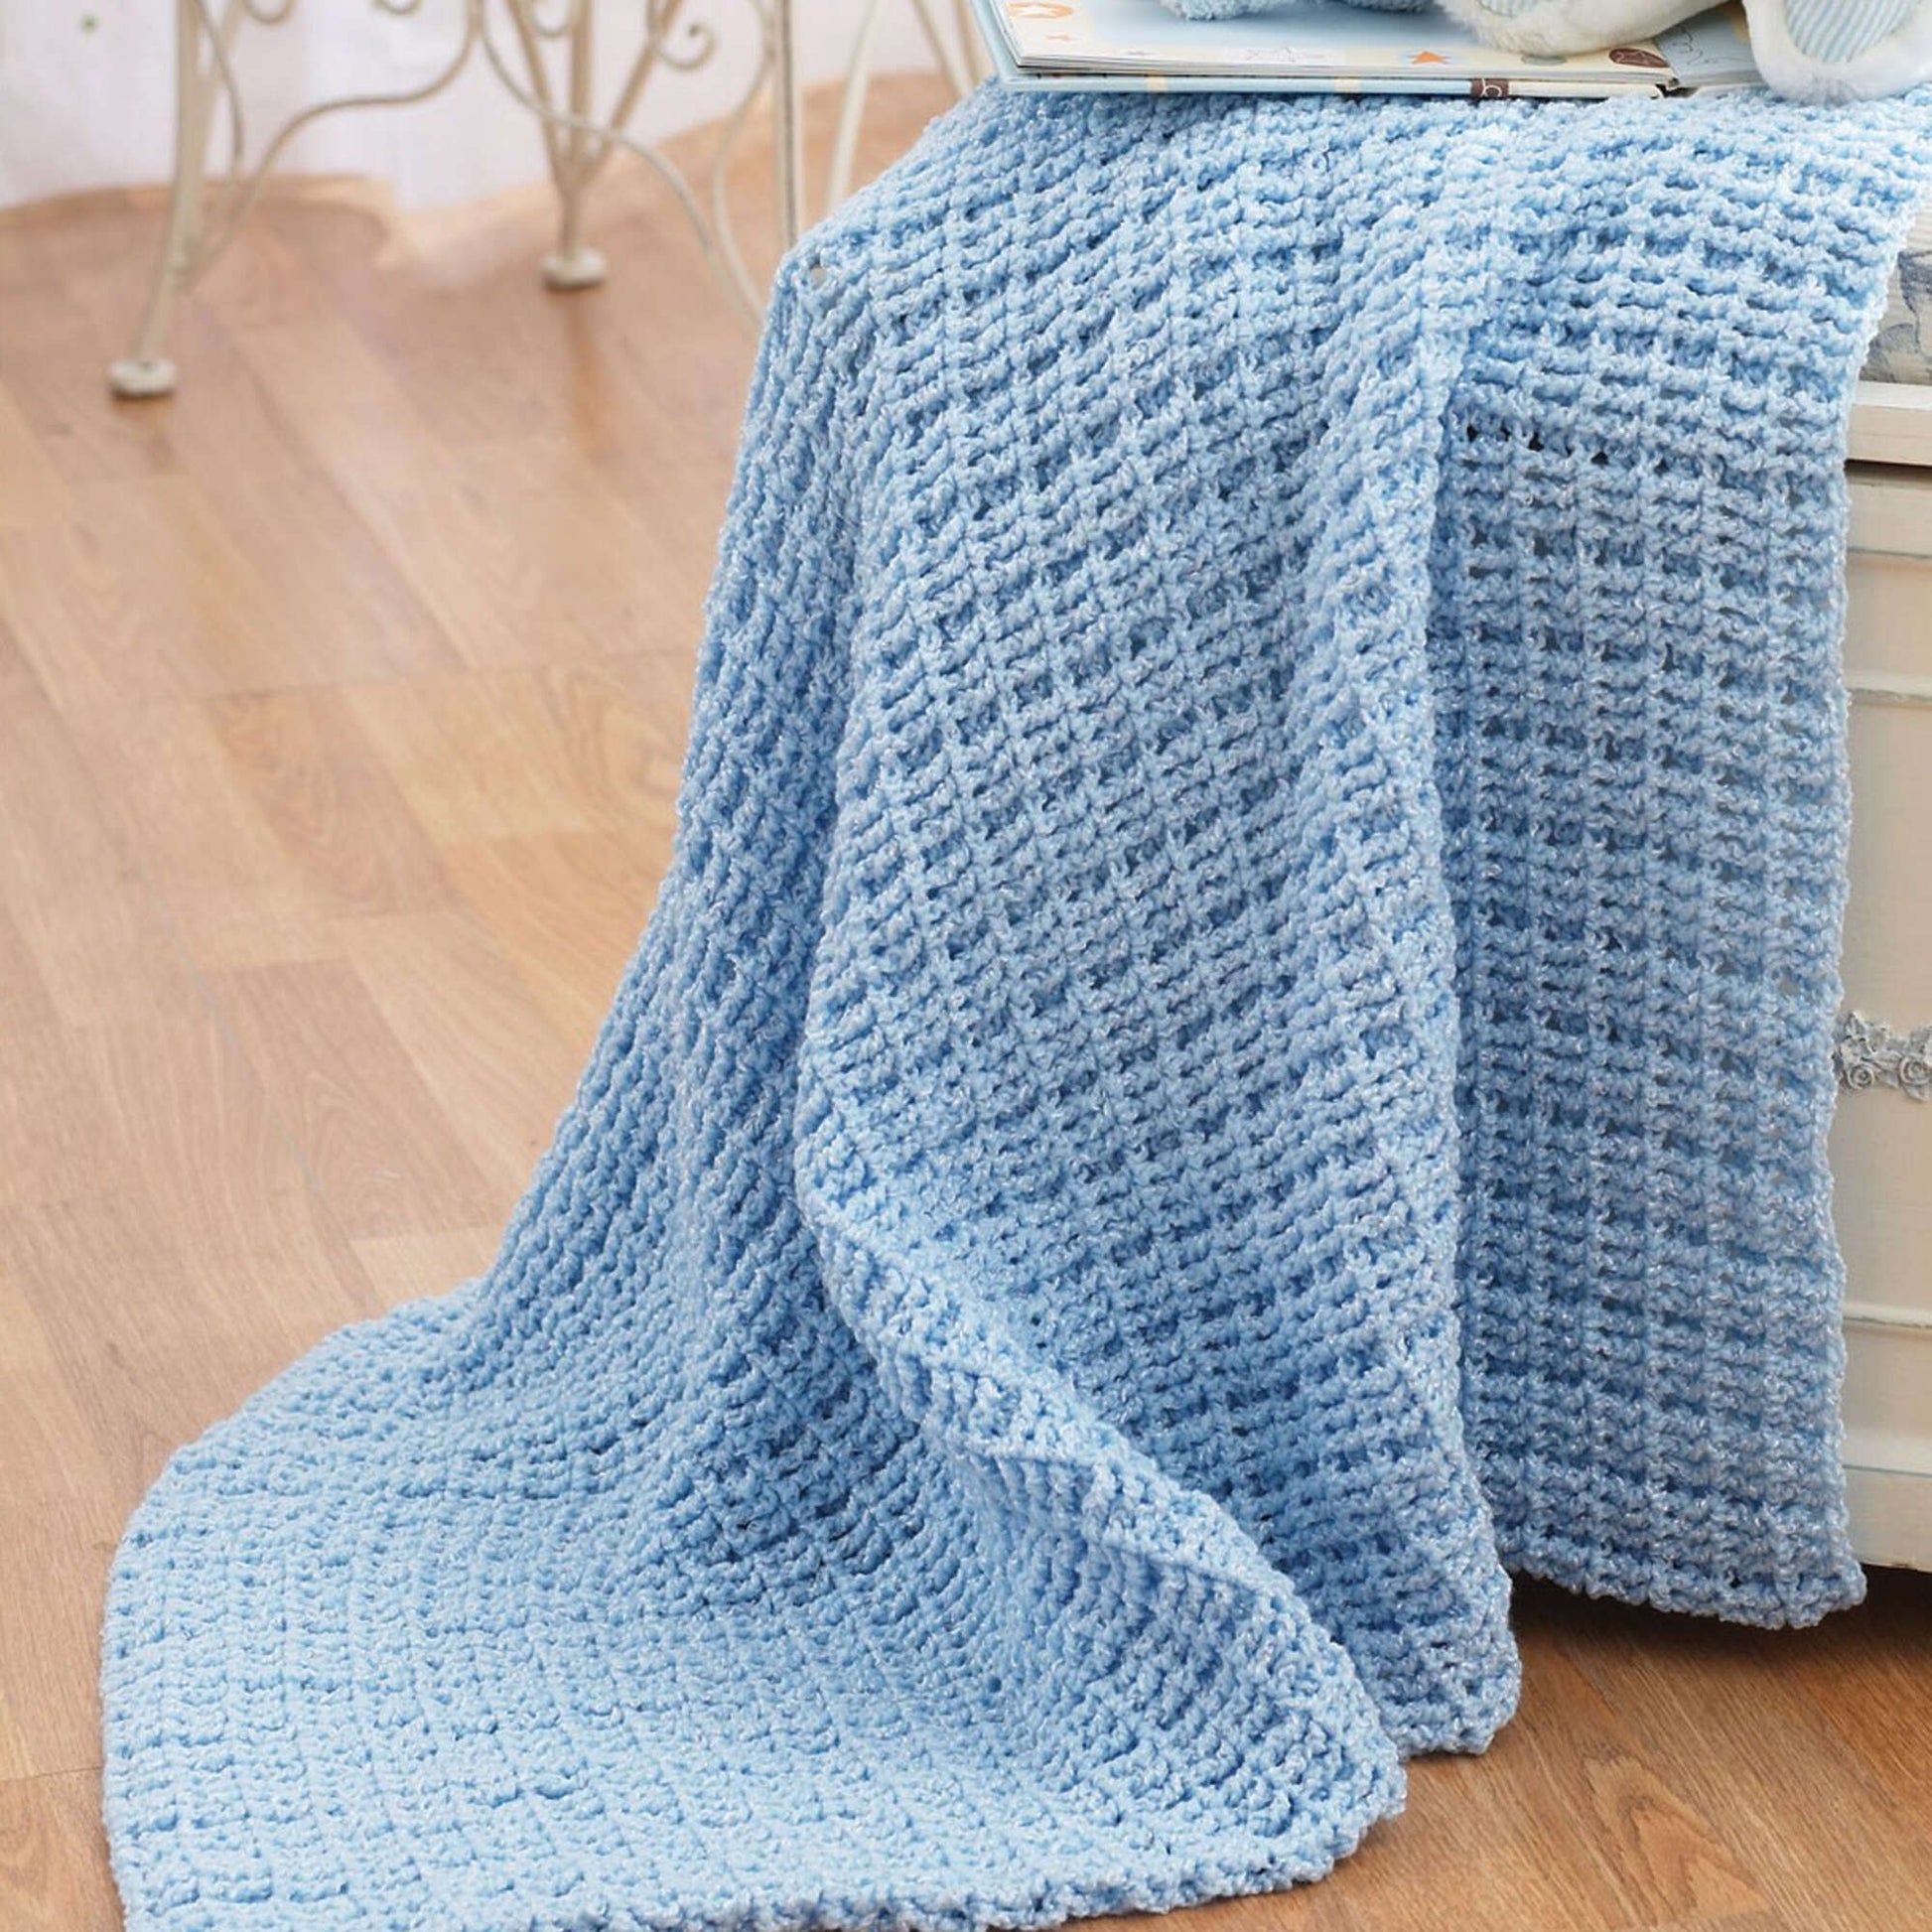 Free Bernat Crochet Blanket Pattern